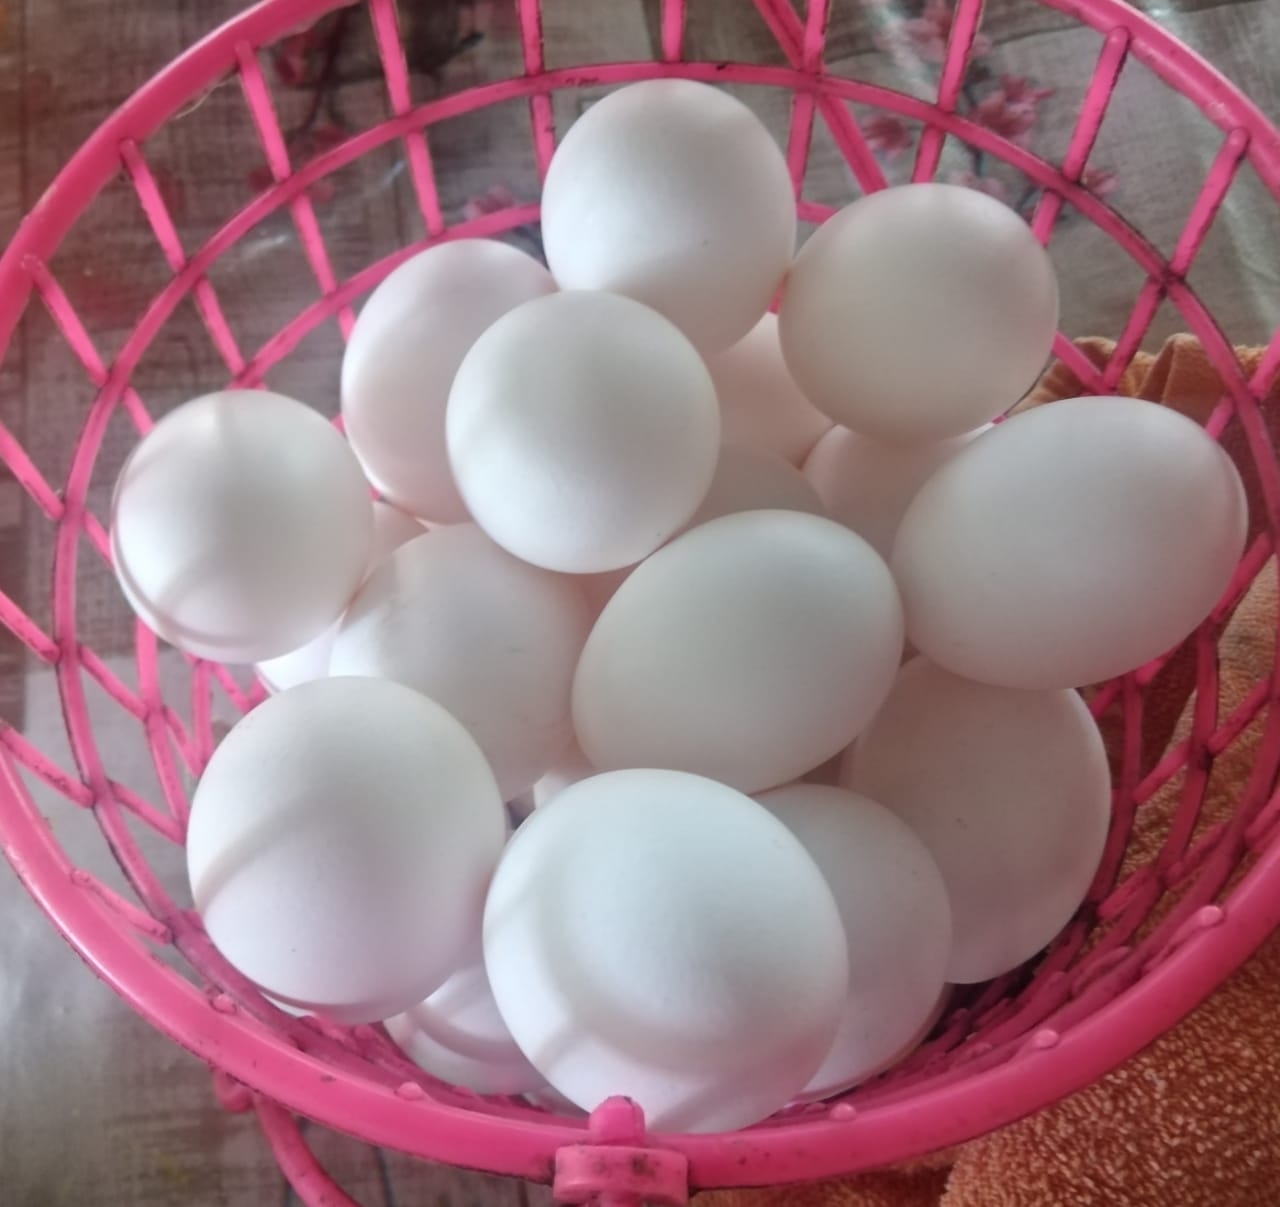 En Sabancuy, precio de la reja huevo alcanza hasta los 115 pesos